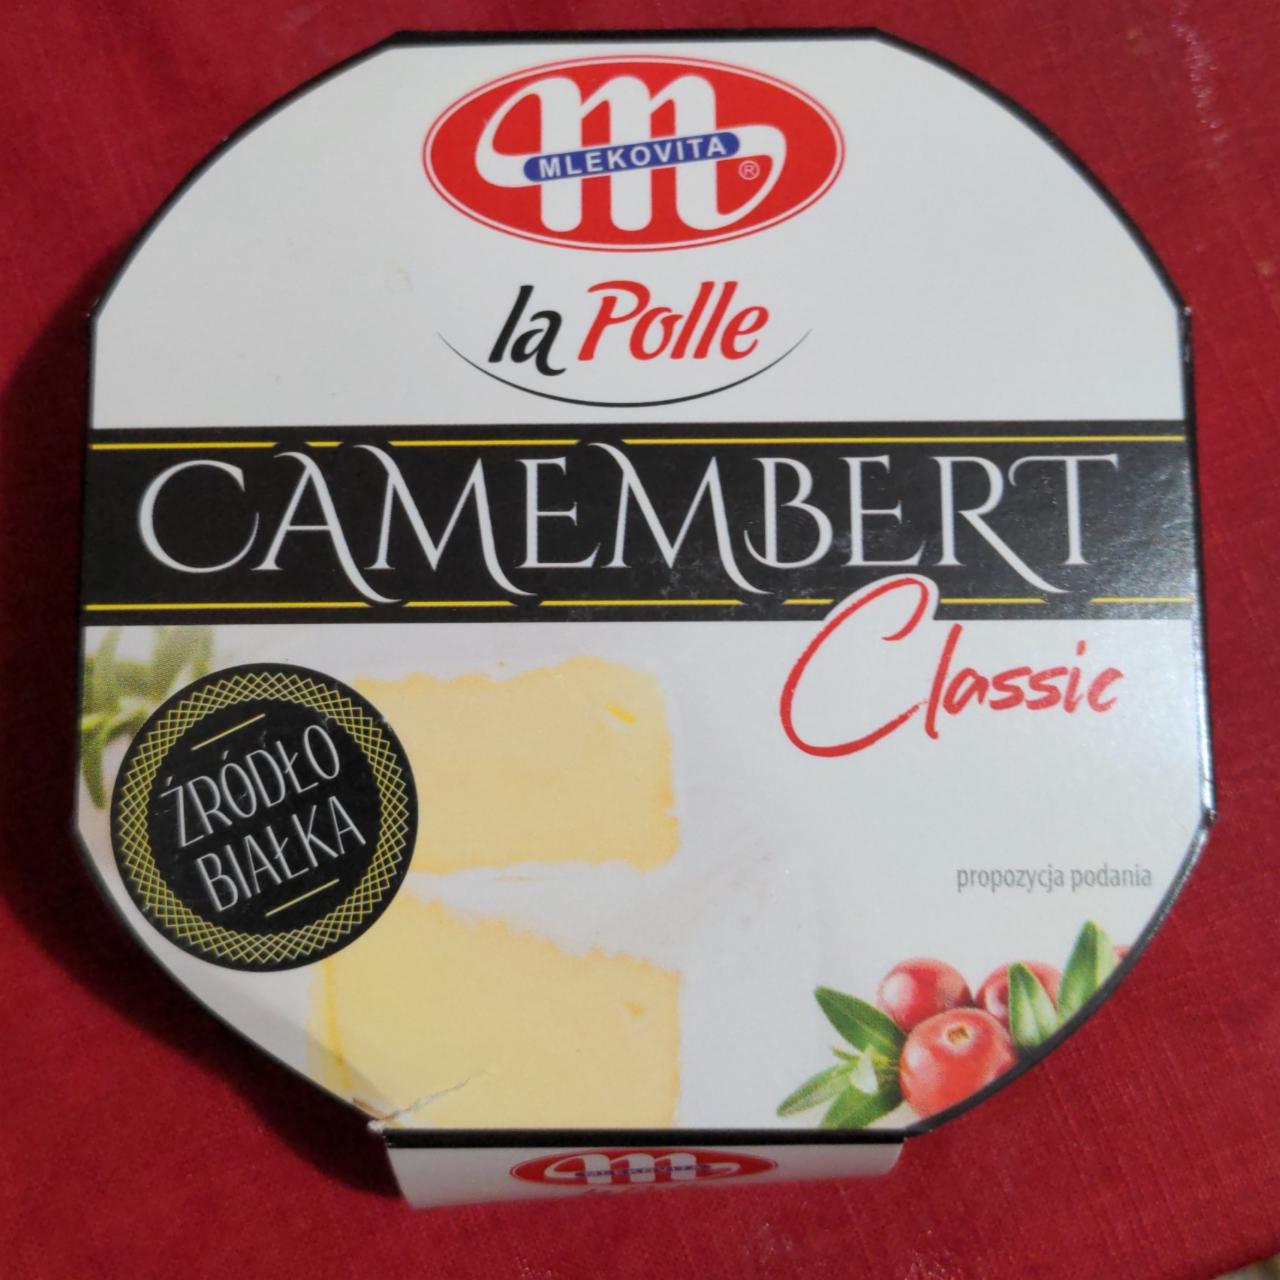 Fotografie - Camembert classic la Polle Mlekovita